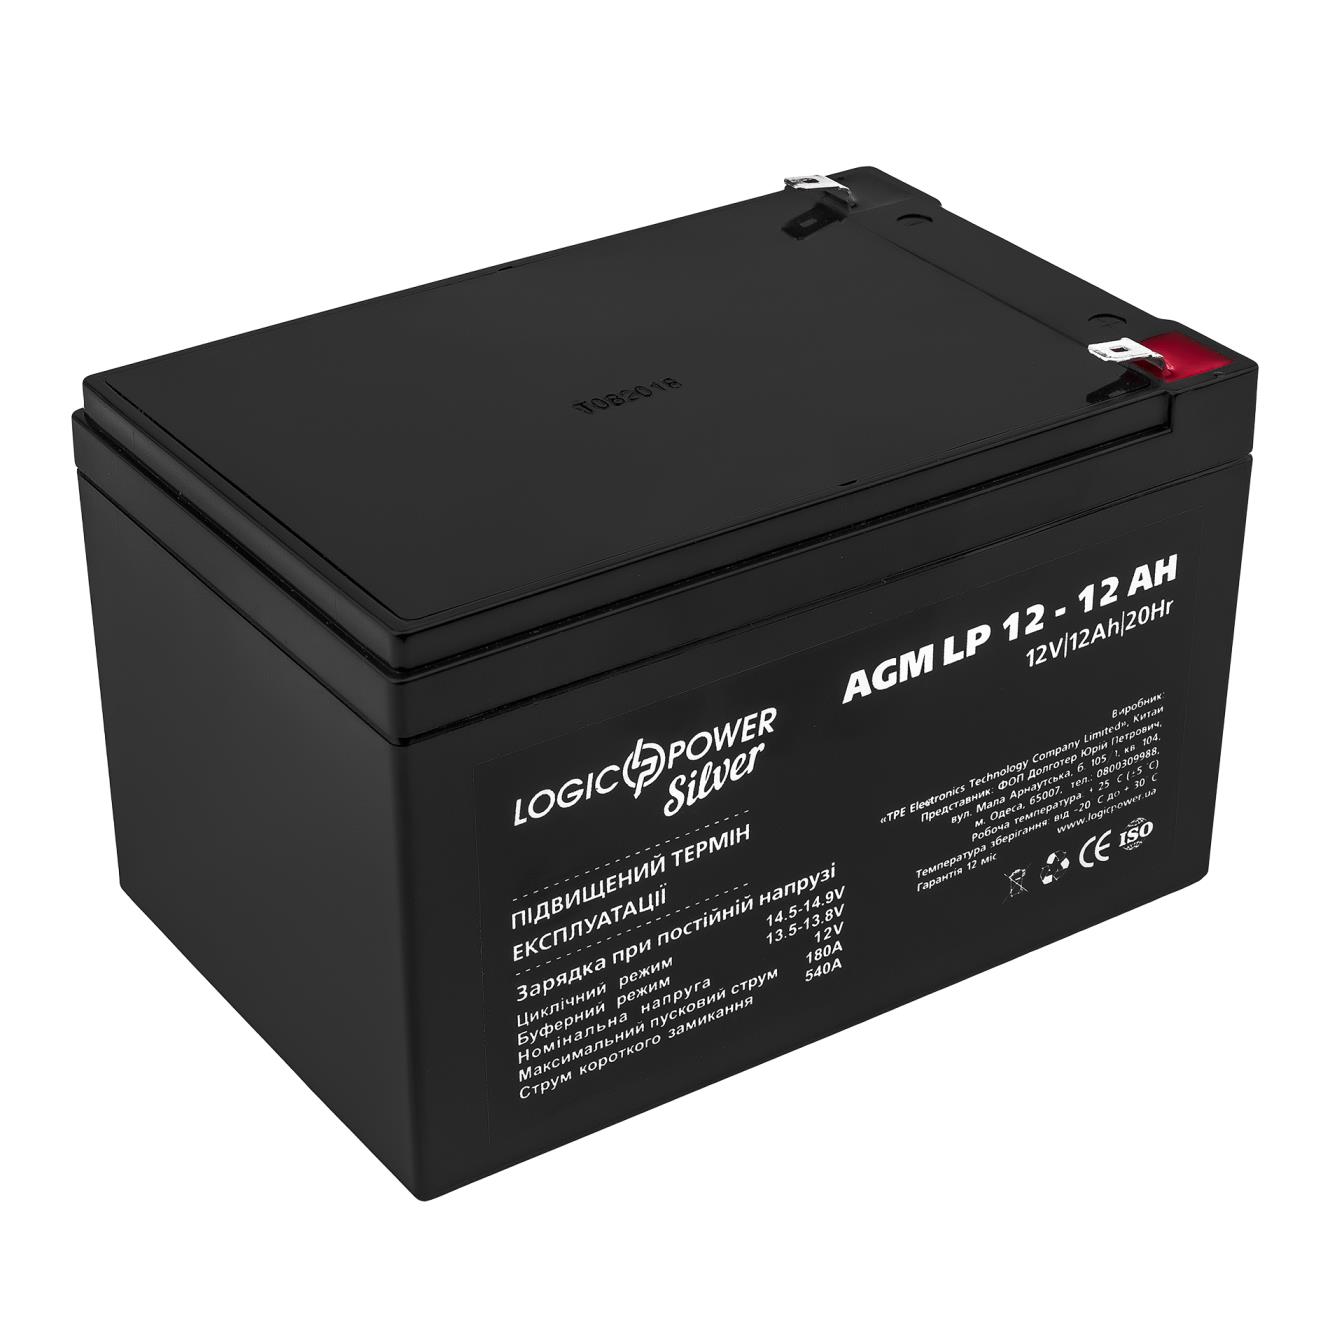 Аккумулятор 12 A·h LogicPower AGM LP 12V - 12 Ah Silver (2672)